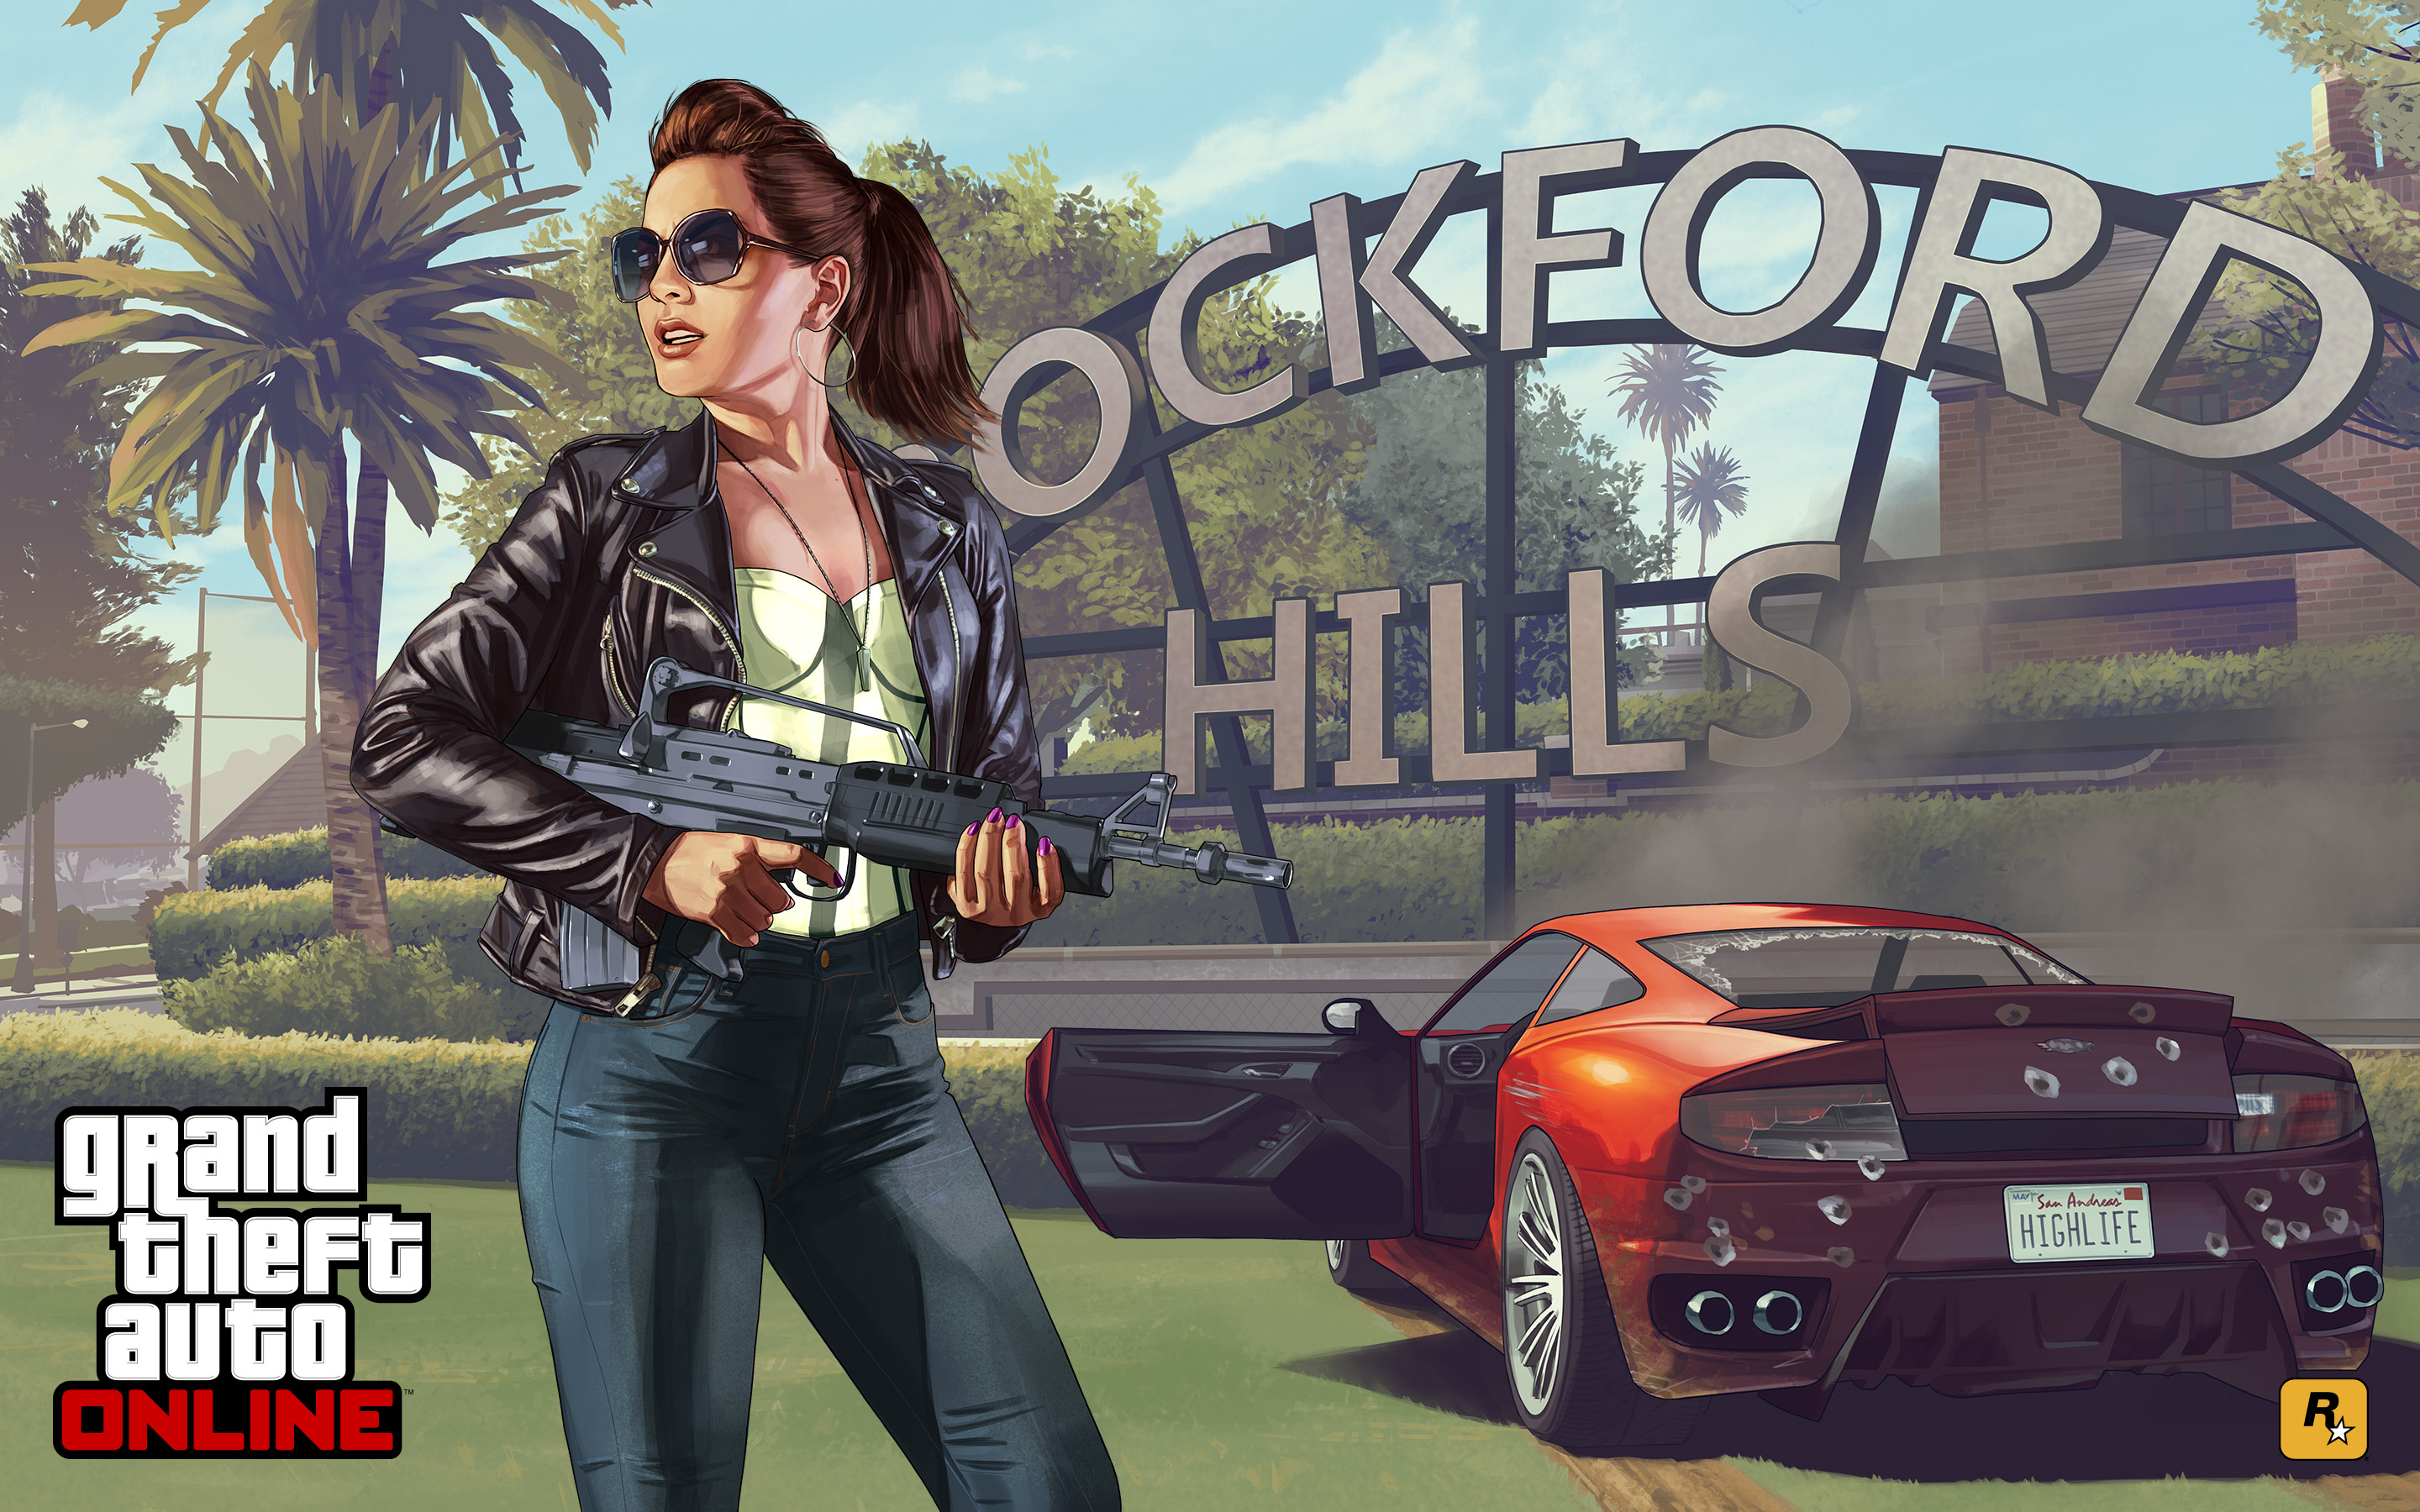 Widescreen Gaming Gta 5 1666 Online Wallpaper Highlife - Grand Theft Auto Online Art , HD Wallpaper & Backgrounds